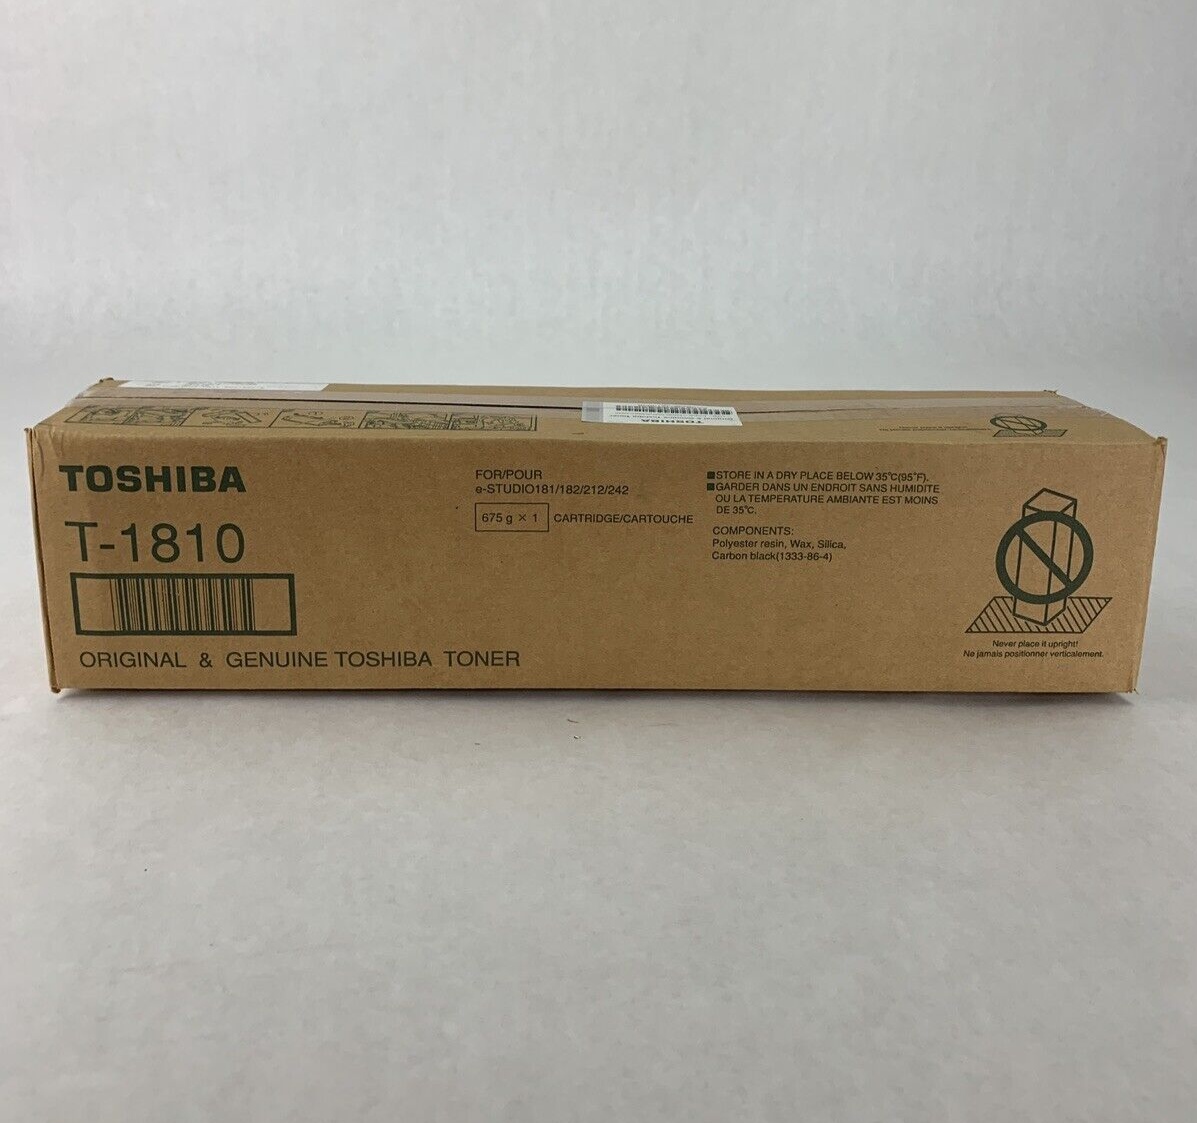 New OEM Sealed Toshiba T-1810 Black Toner Cartridge